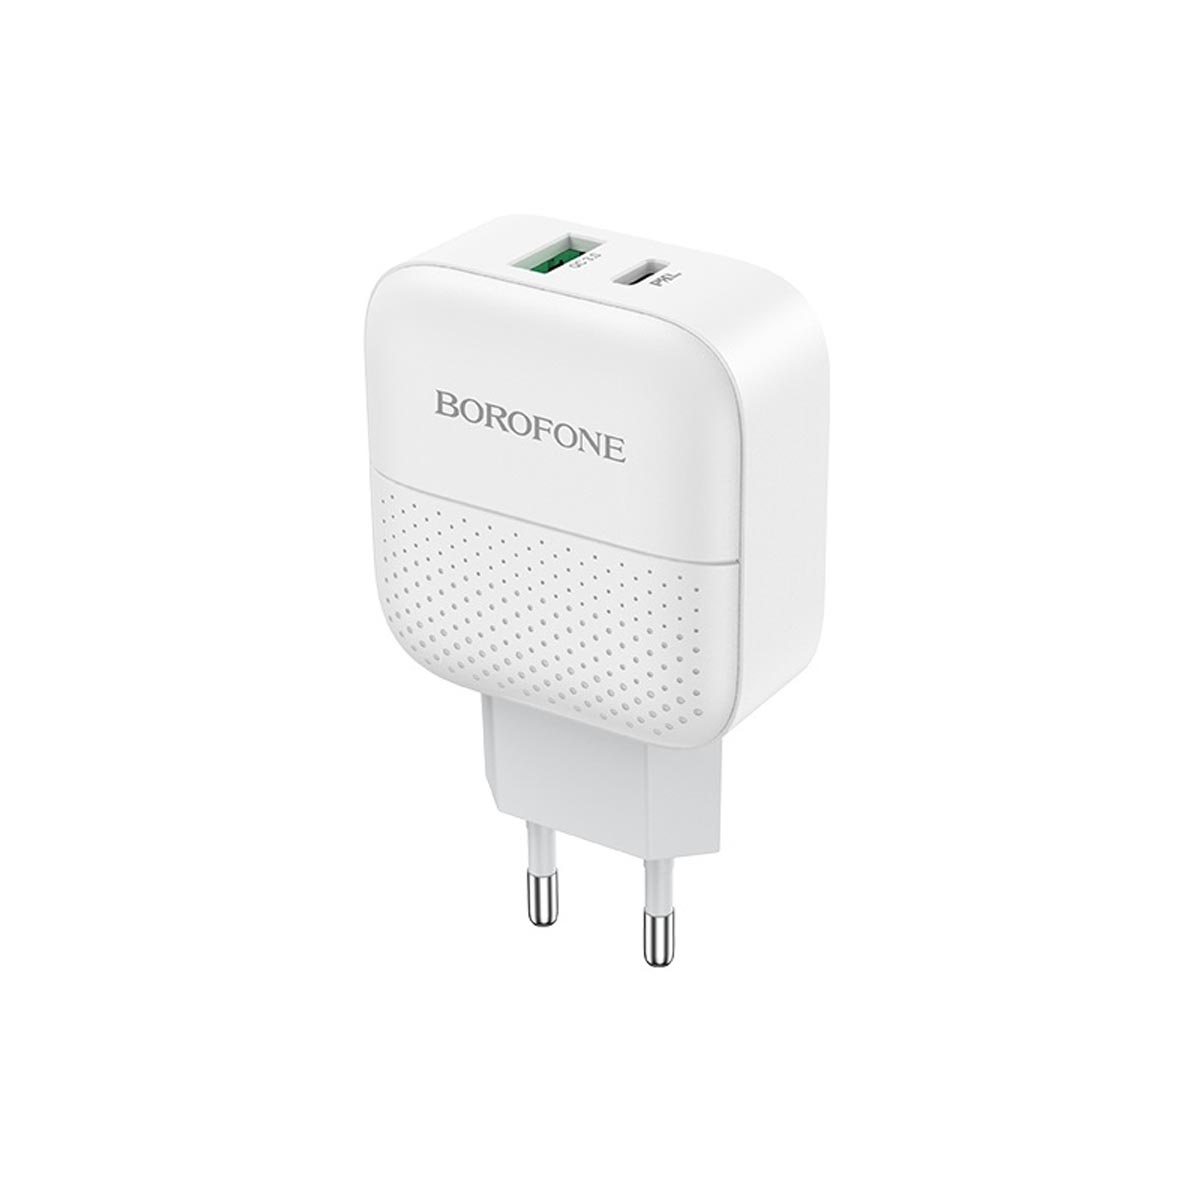 СЗУ (Сетевое зарядное устройство) BOROFONE BA46A Premium, 1 USB, 1 USB Type C, 18W, 3.0A, цвет белый